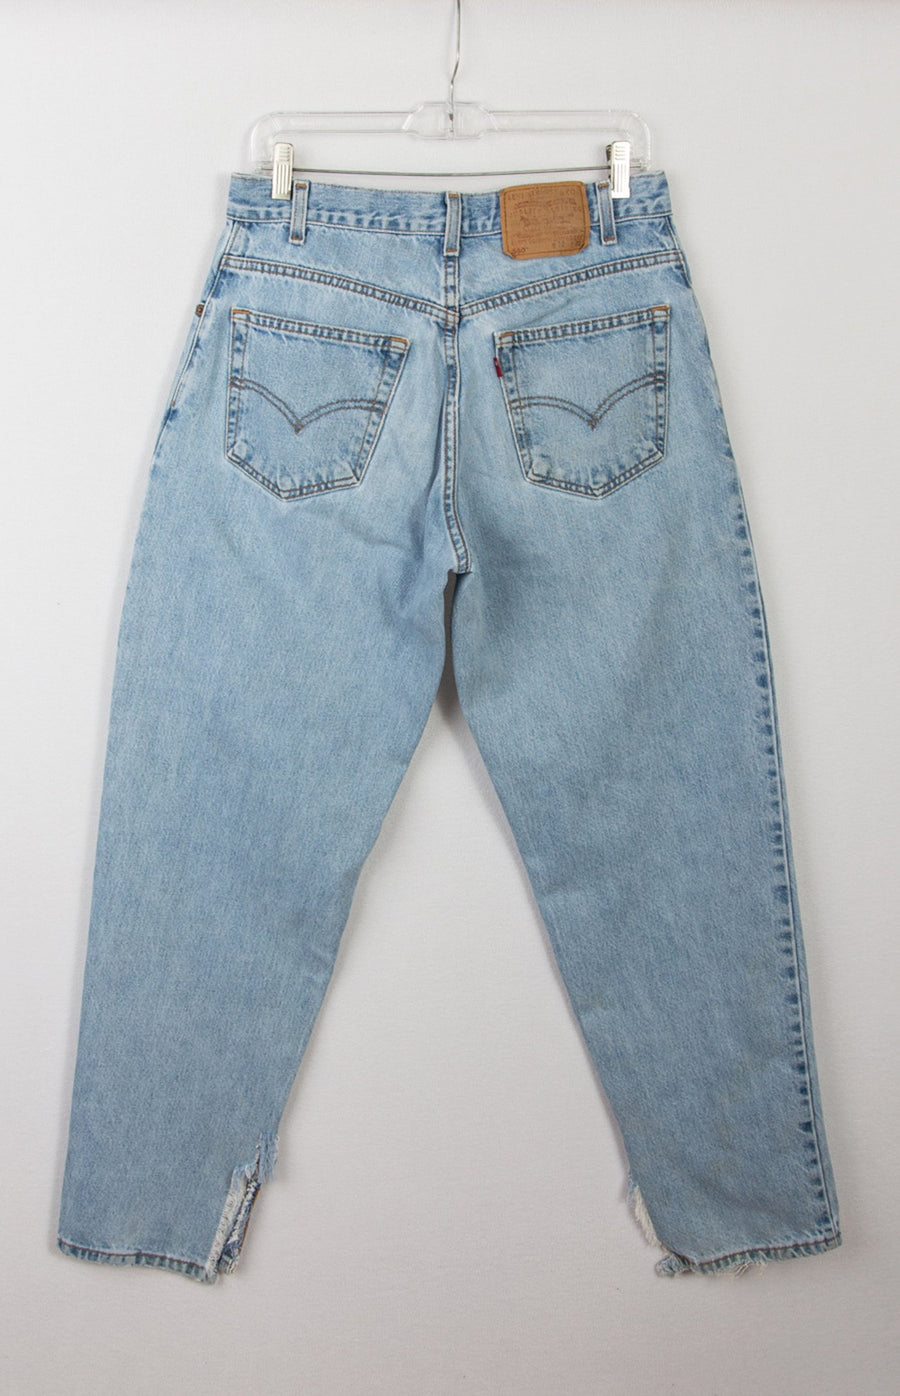 Levi's 560 Jeans | Vintage Levis Jeans | GOAT Vintage